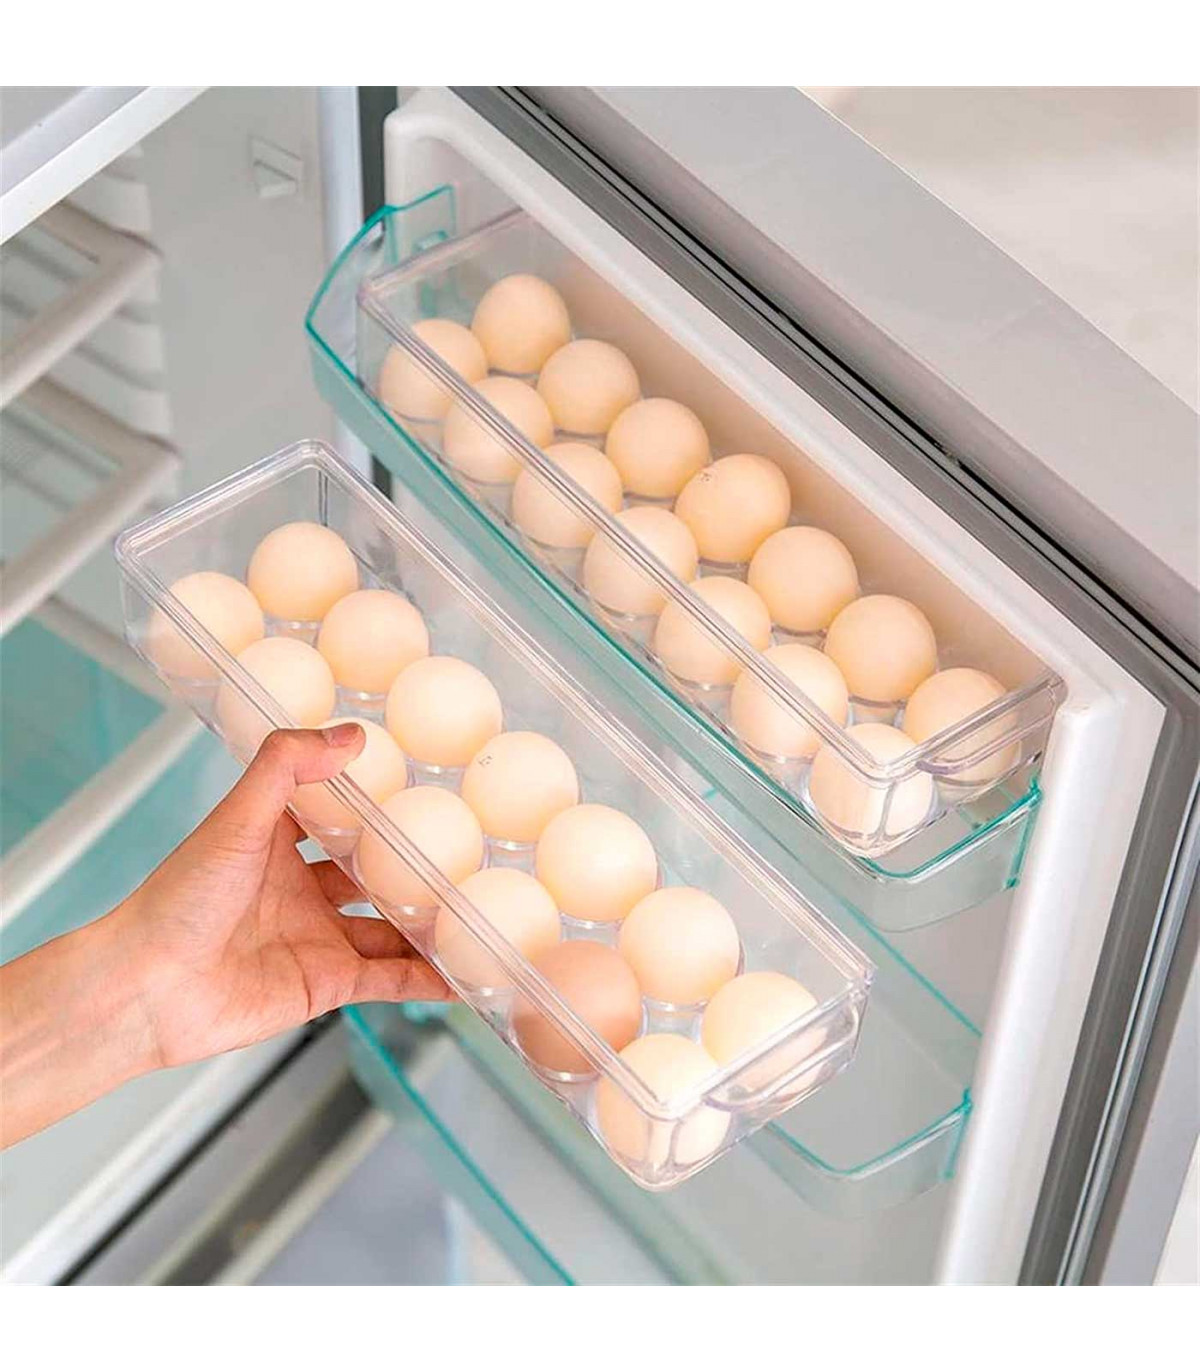 https://tradineur.com/64263-superlarge_default/tradineur--huevera-rectangular-plastico-transparente-recipiente-para-14-huevos-almacenamiento-de-cocina-115-x-37-x-8-cm.jpg